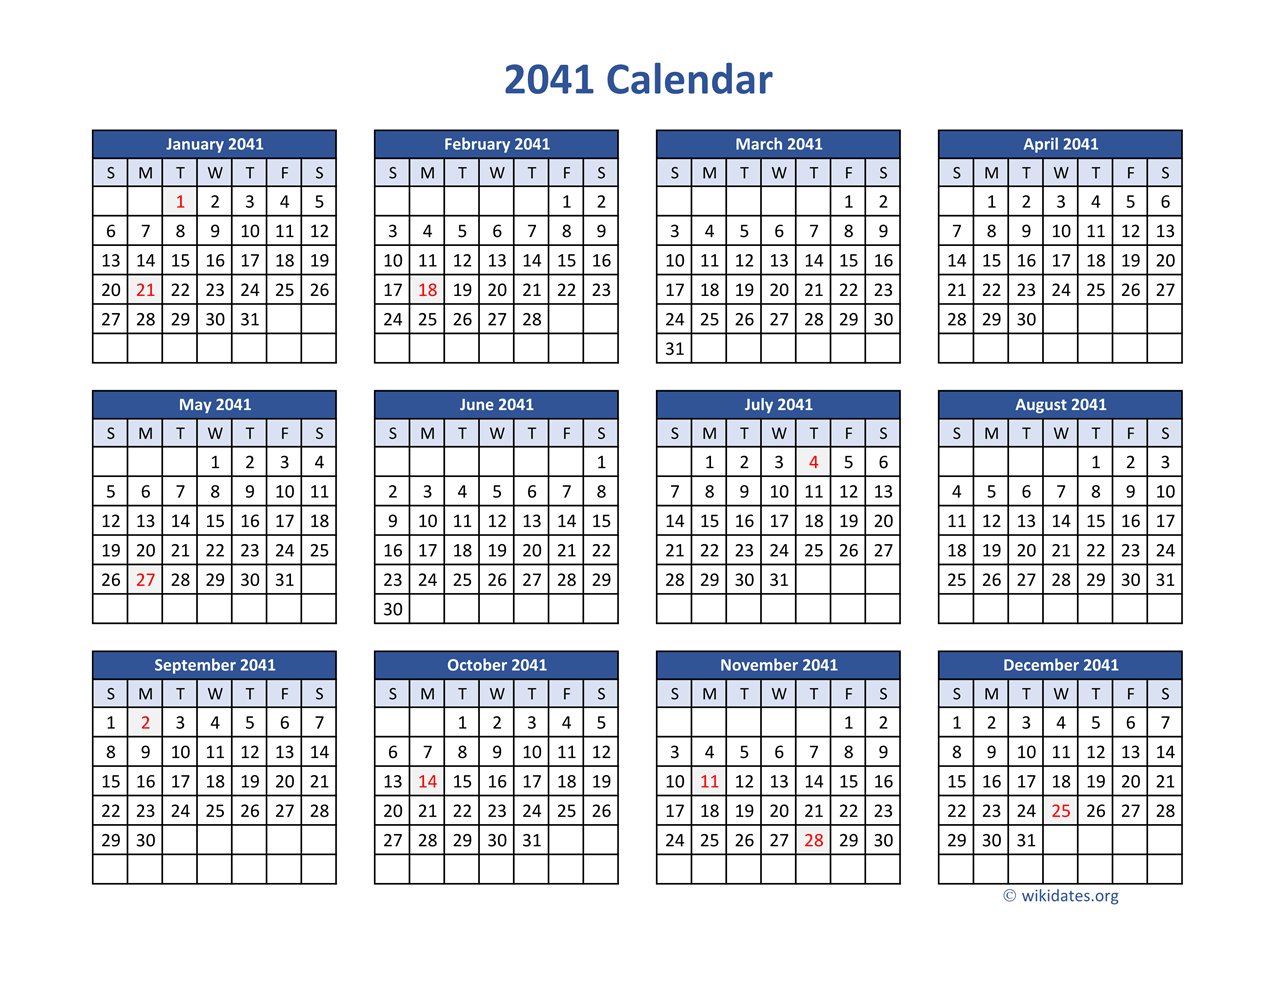 2041 Calendar in PDF | WikiDates.org